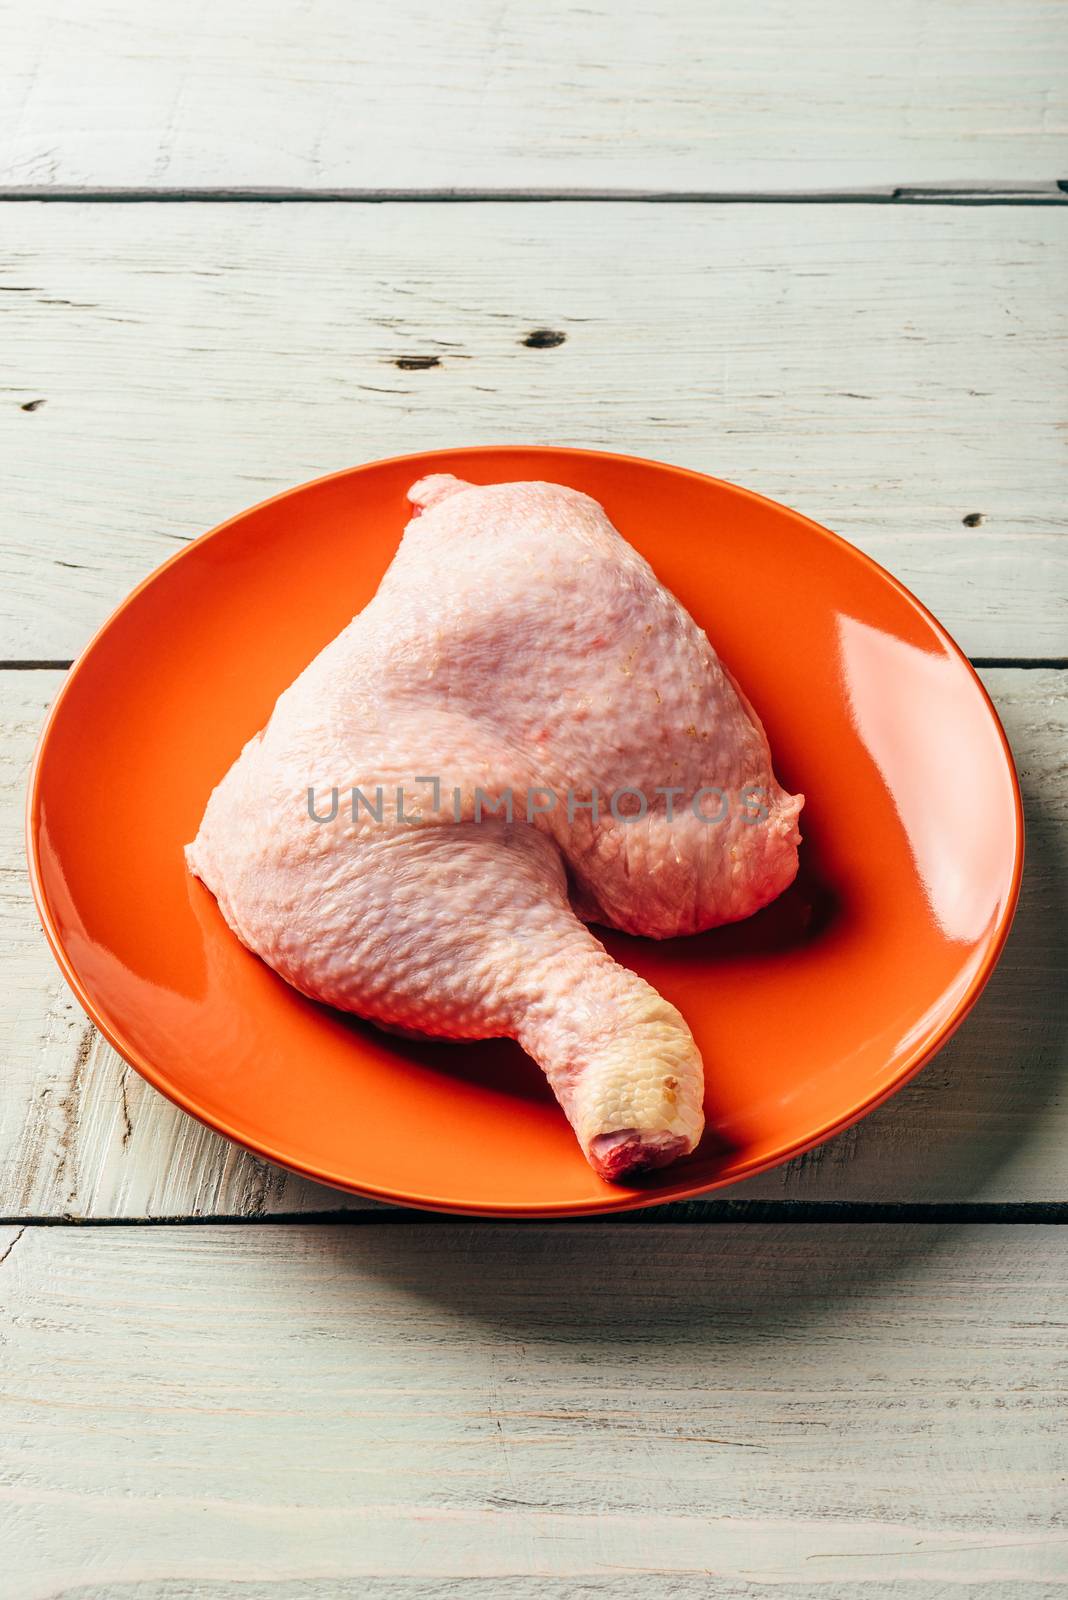 Chicken leg on orange plate over light wooden table